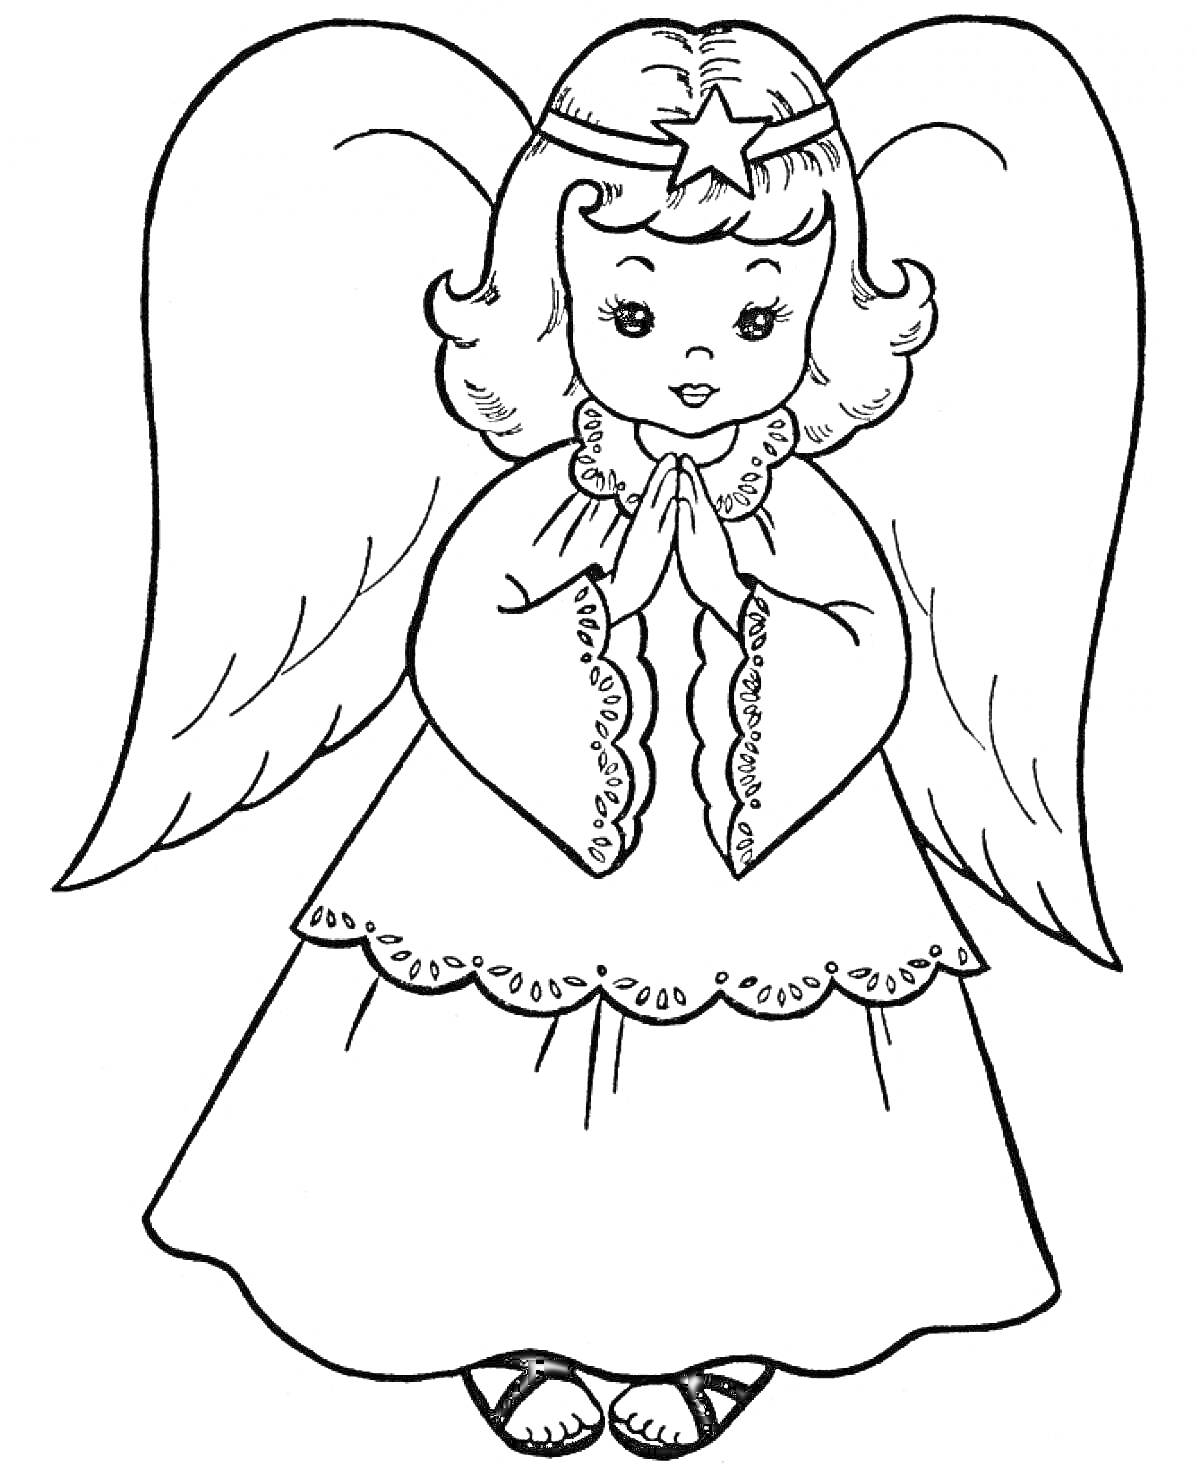 Раскраска Ангел с крыльями и звёздочкой на голове